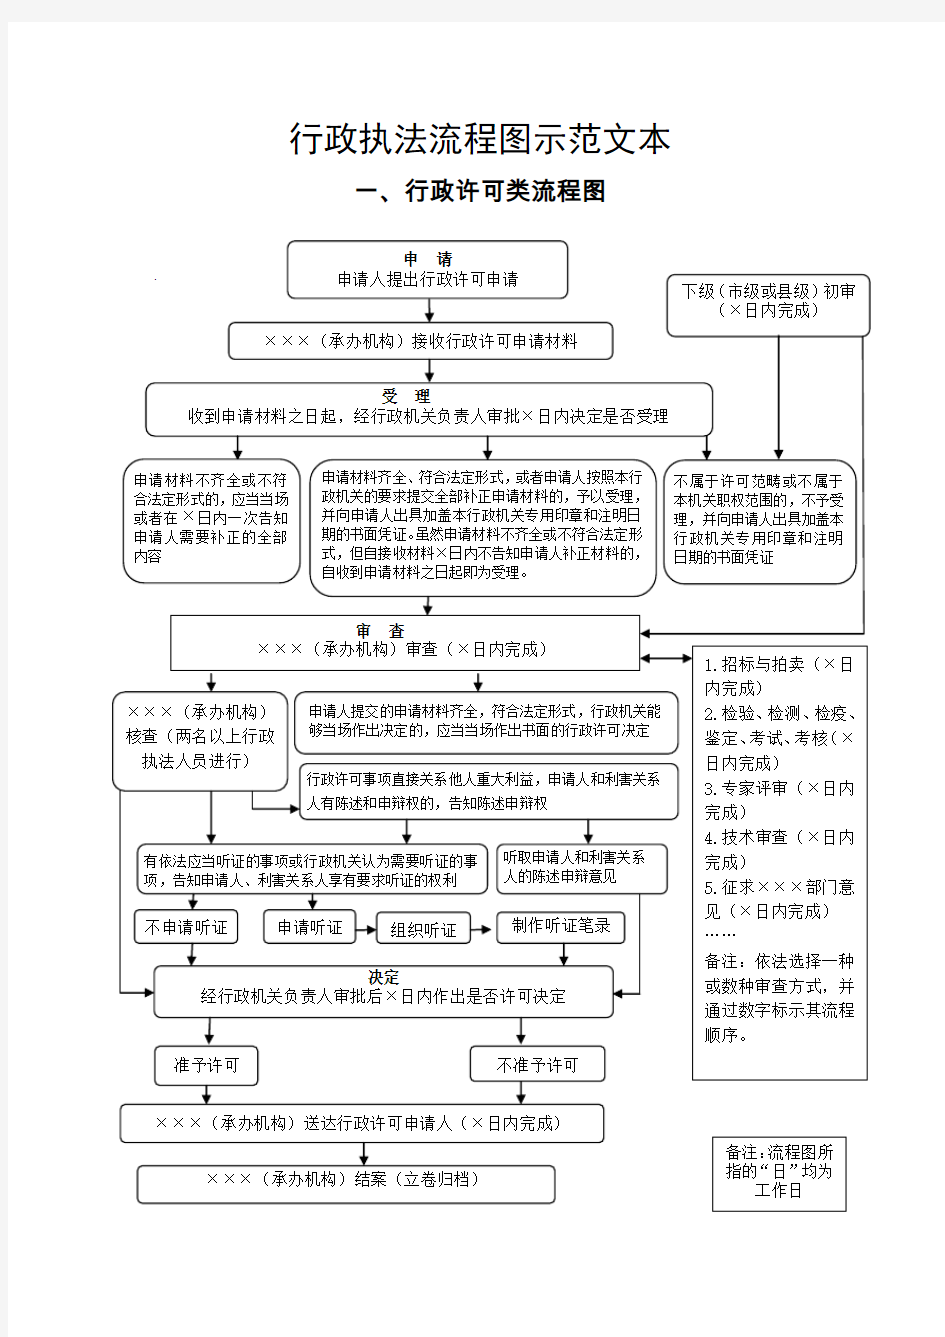 行政执法流程图